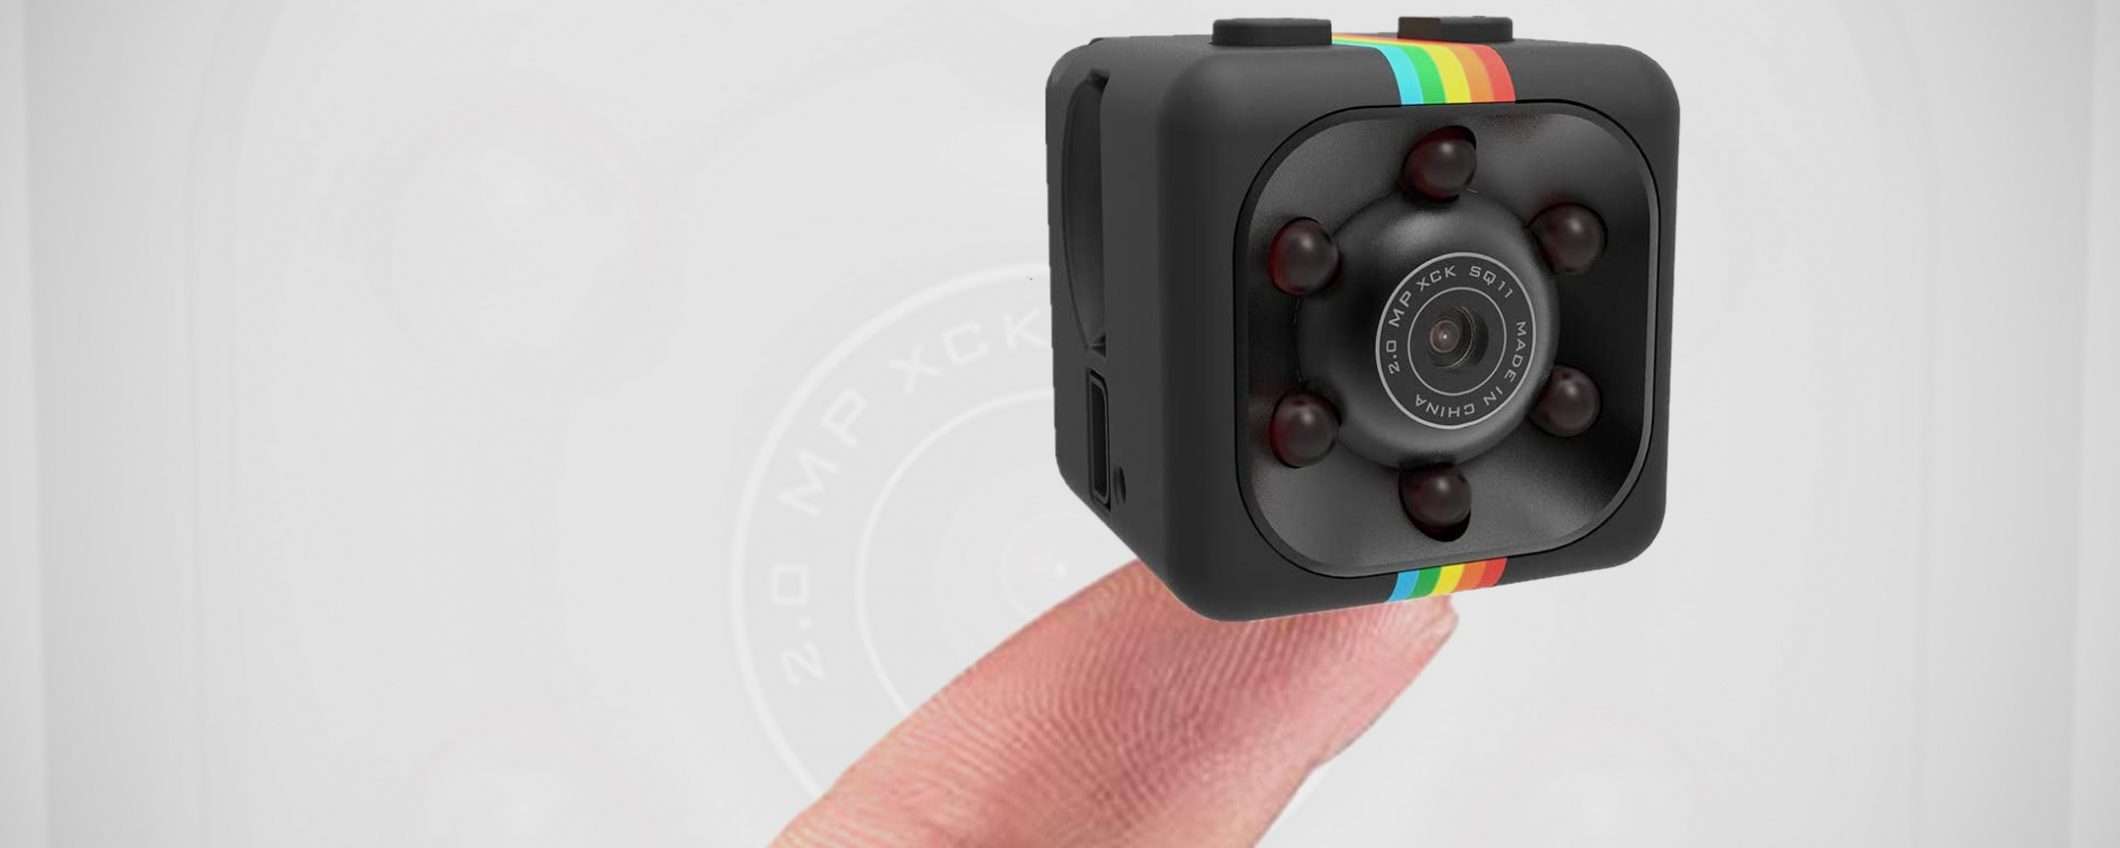 Mini videocamera a 10 euro: anche il PREZZO è MINI